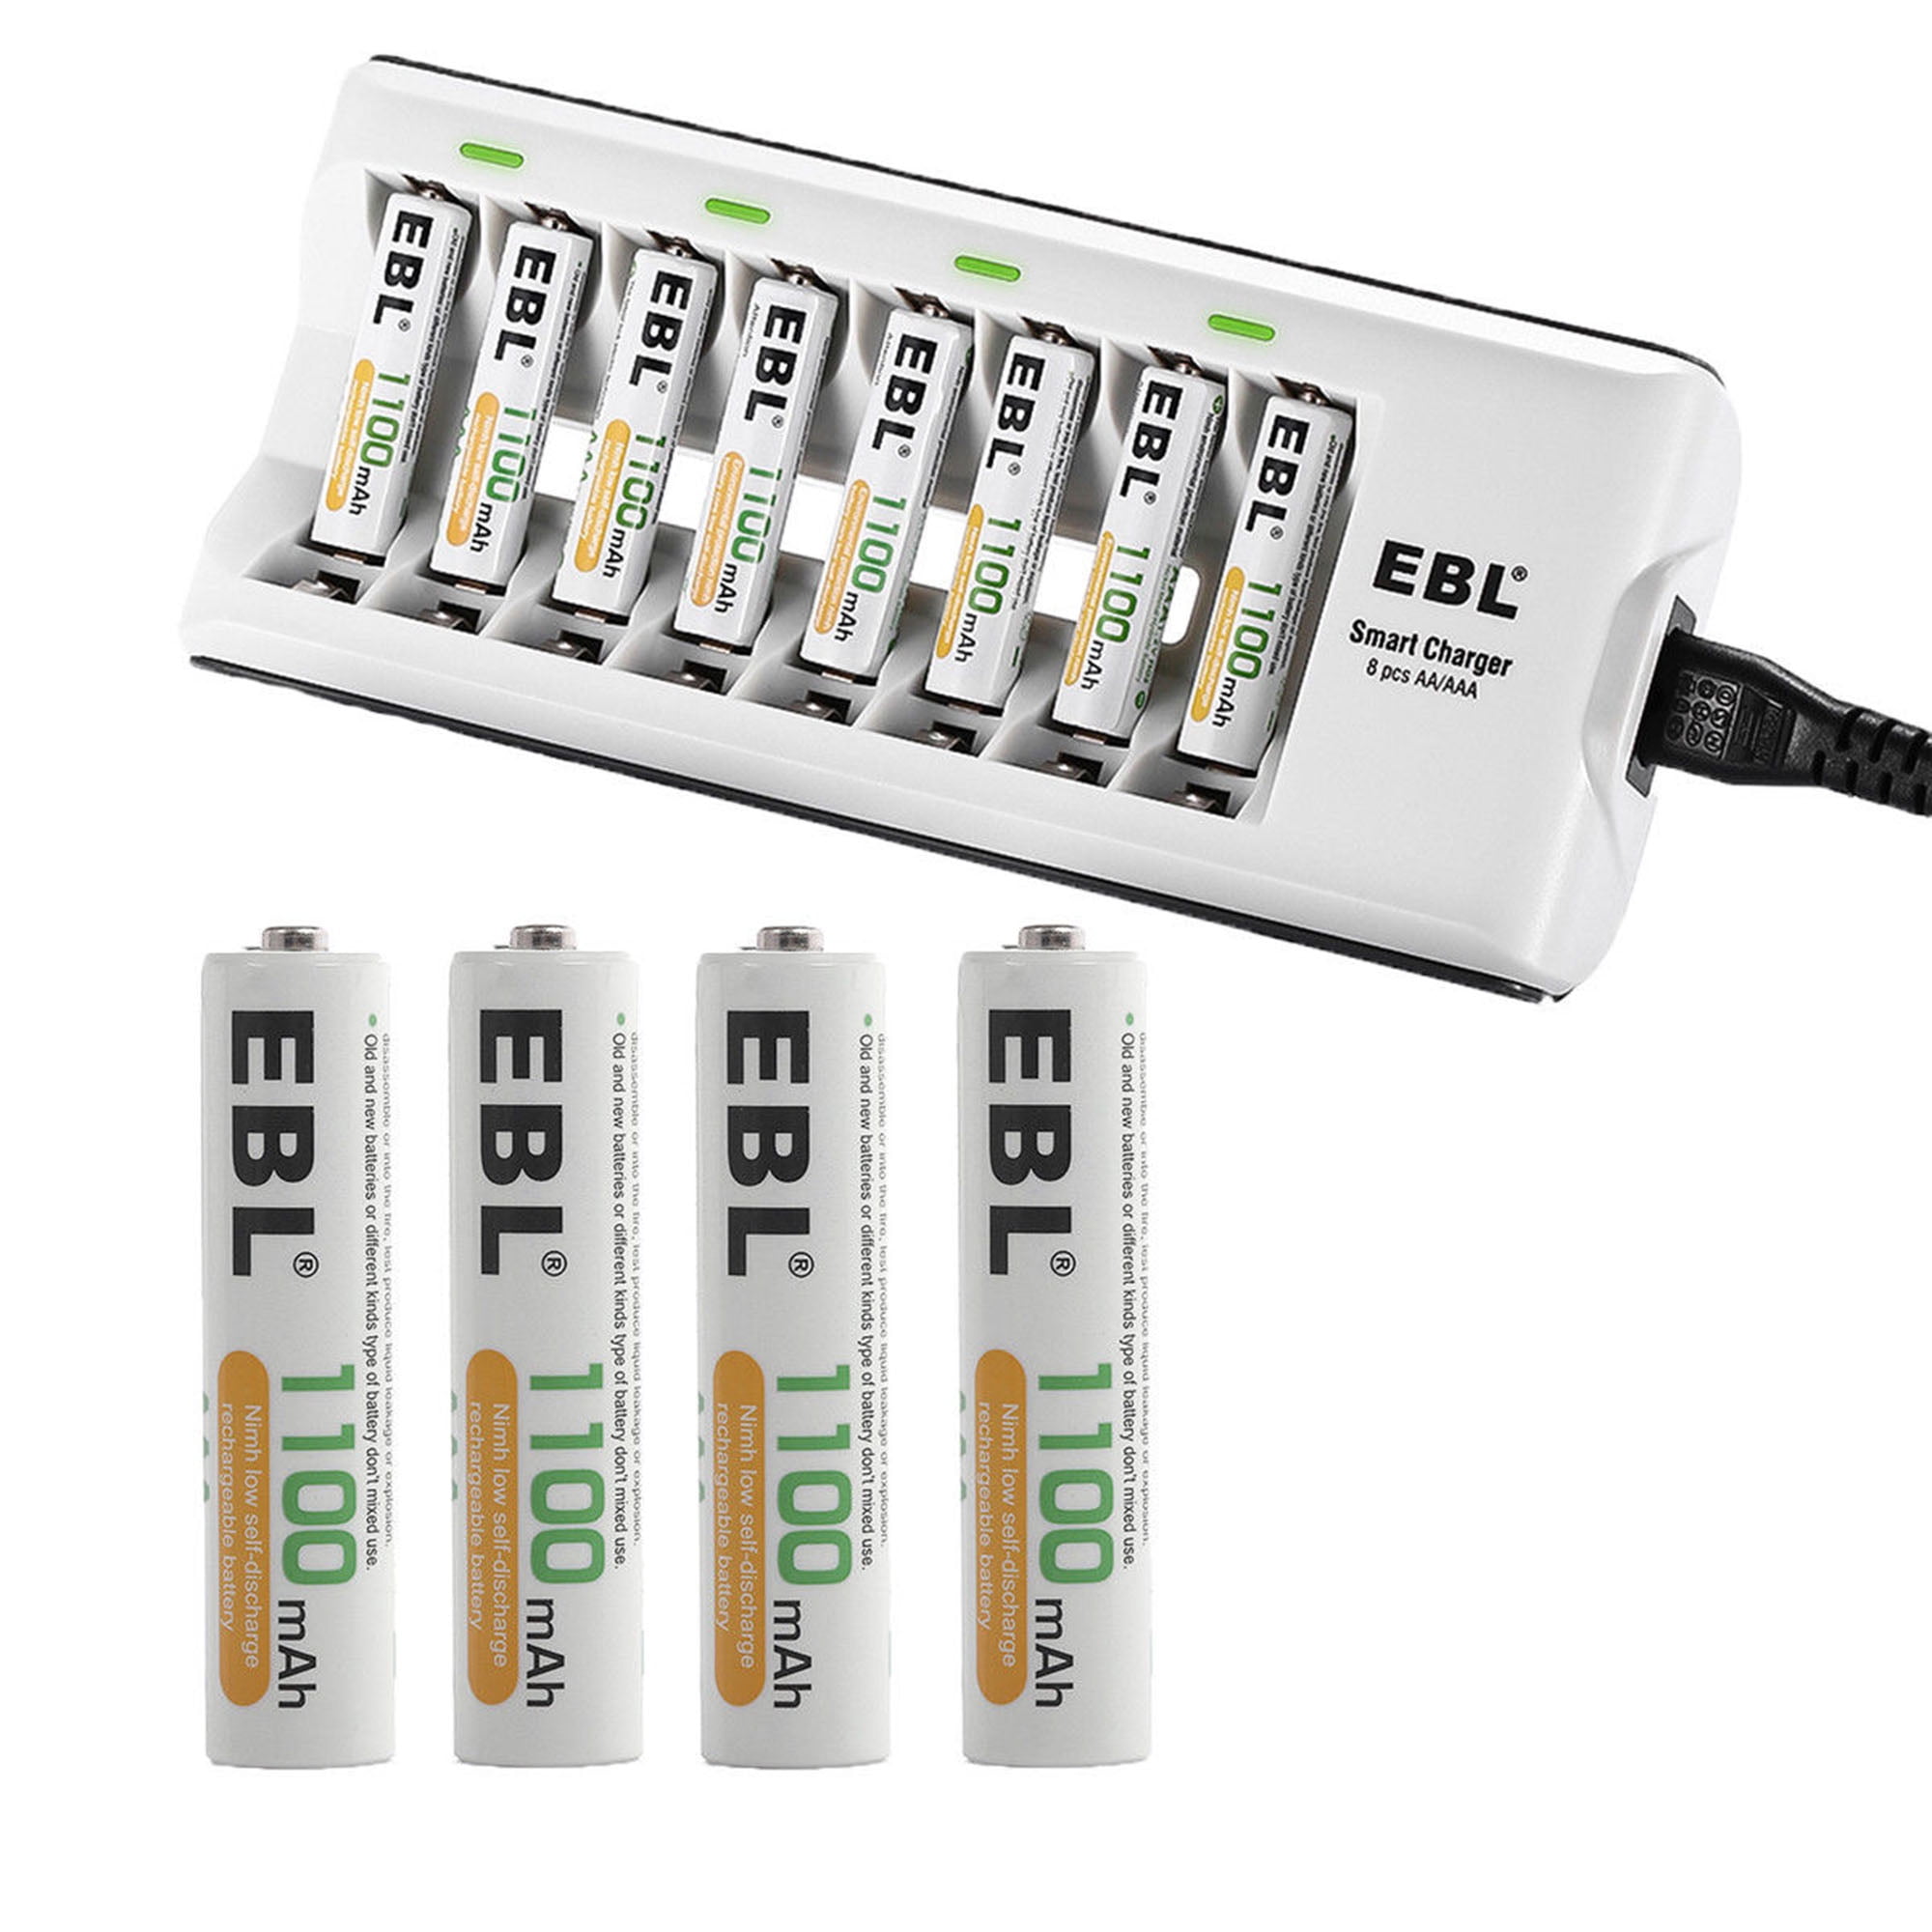 Cargador de baterías AAA y AA y de baterías recargables AAA Ni-MH 1100 mAh,  16 unidades con estuches para pilas de EBL